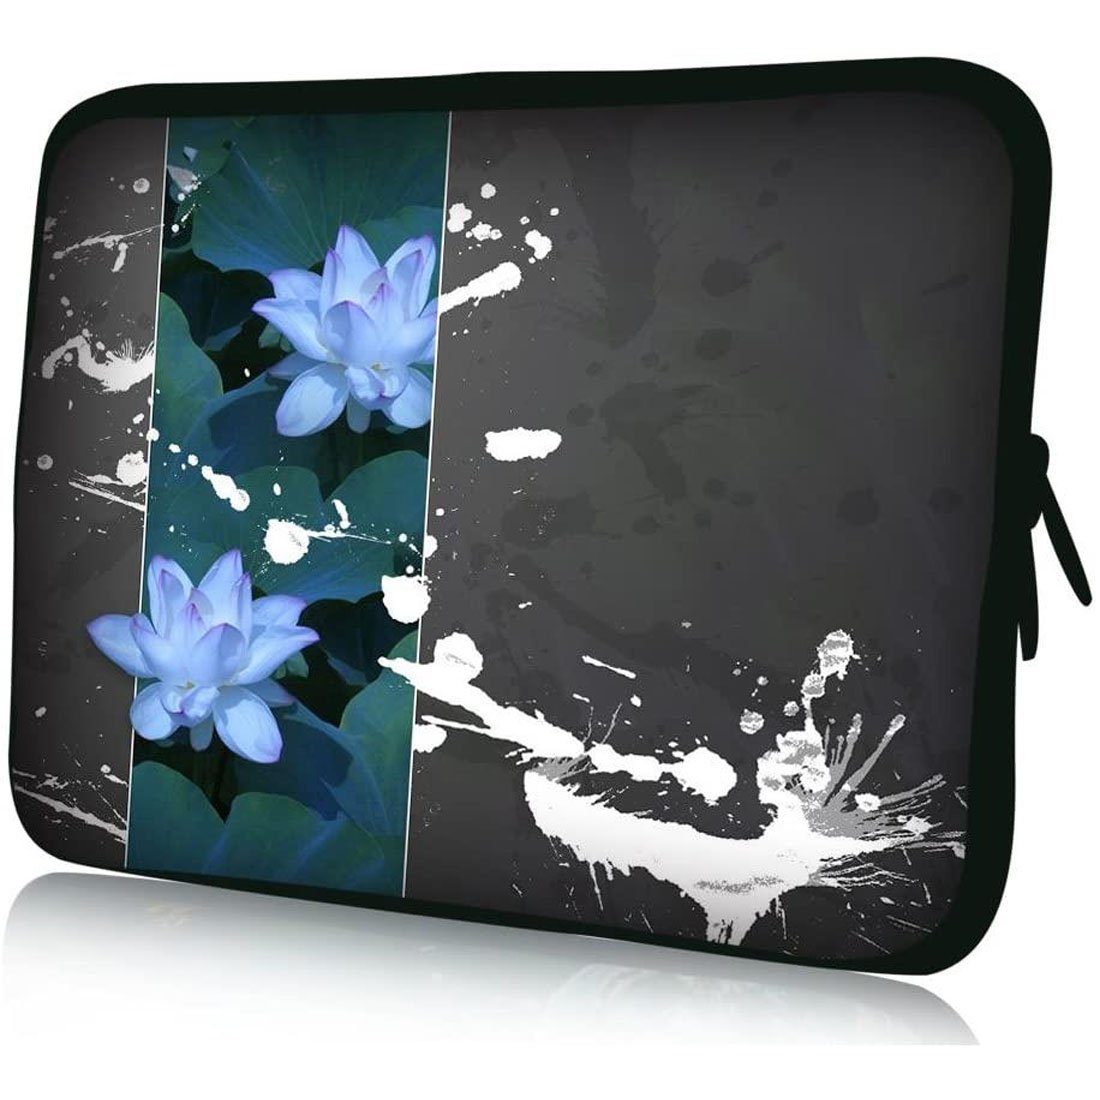 wortek Laptoptasche für Laptops bis 15,4", Seerose Grau Blau, Wasserabweisend